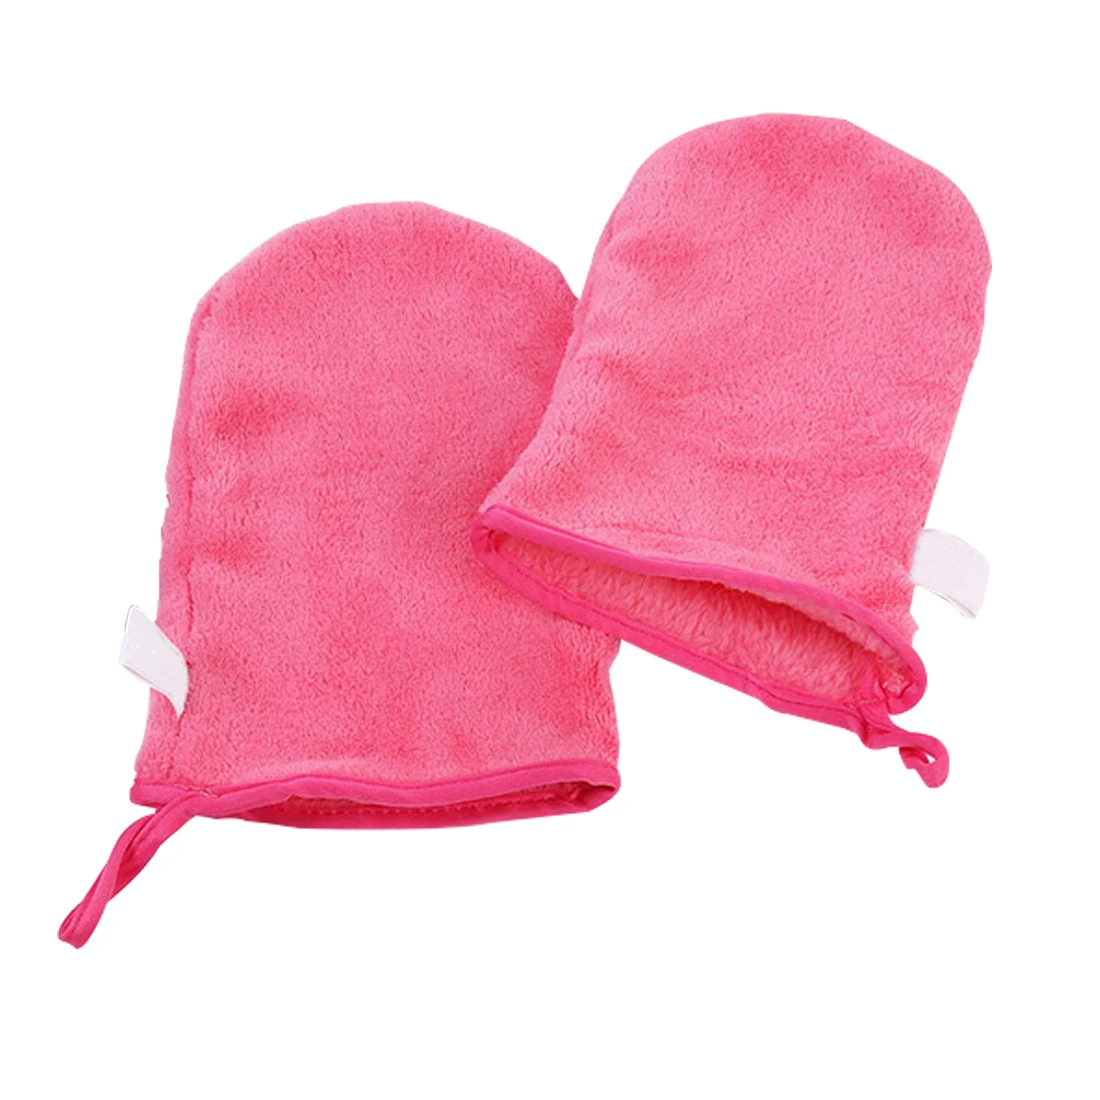 Новая 1 шт. перчатка для снятия макияжа более портативная для переноски, чем полотенце для снятия макияжа дешевле, чем полотенце для снятия макияжа